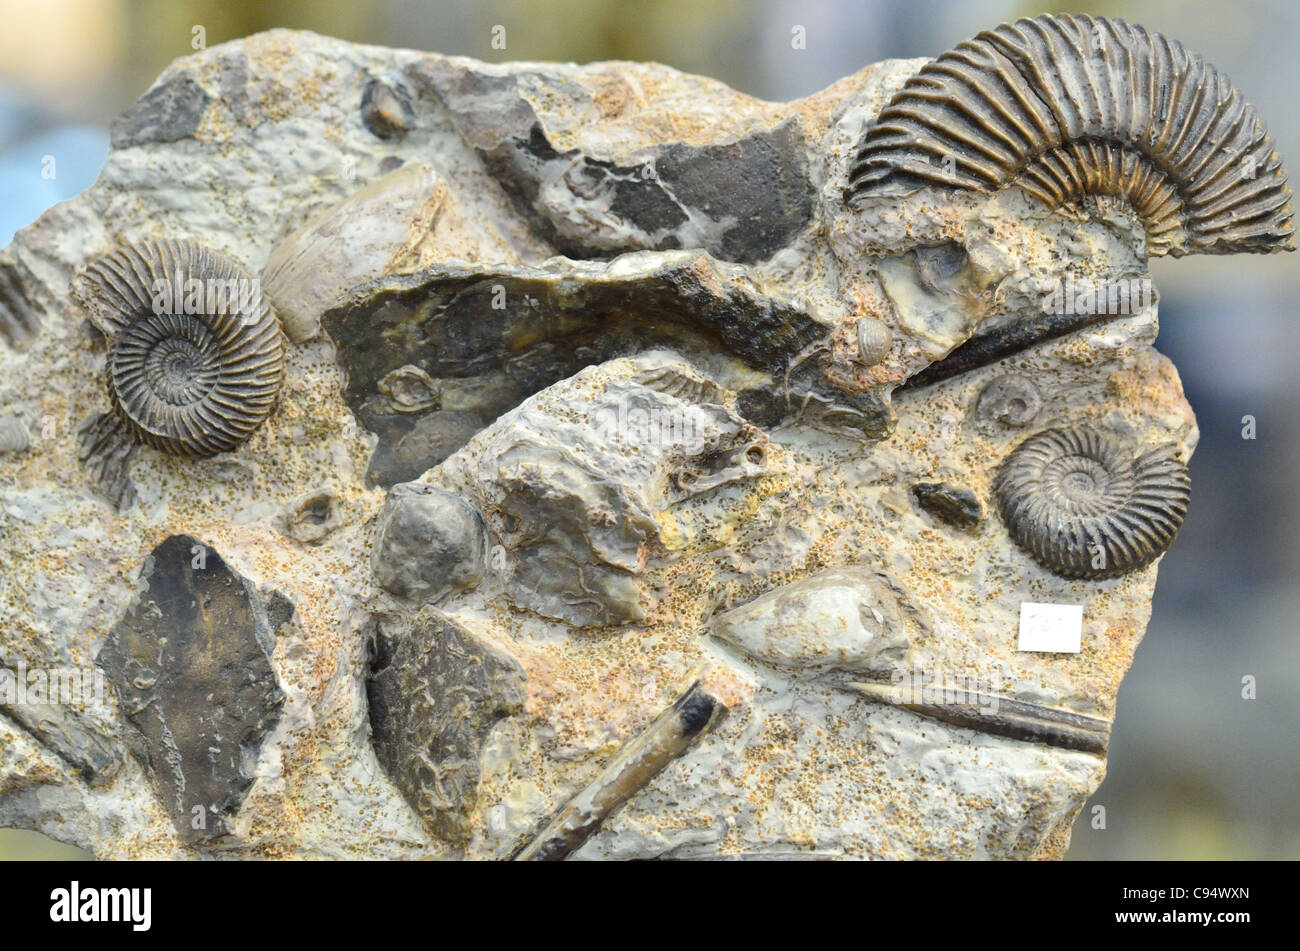 Fossilized marine invertebrate animals in limestone matrix. Stock Photo